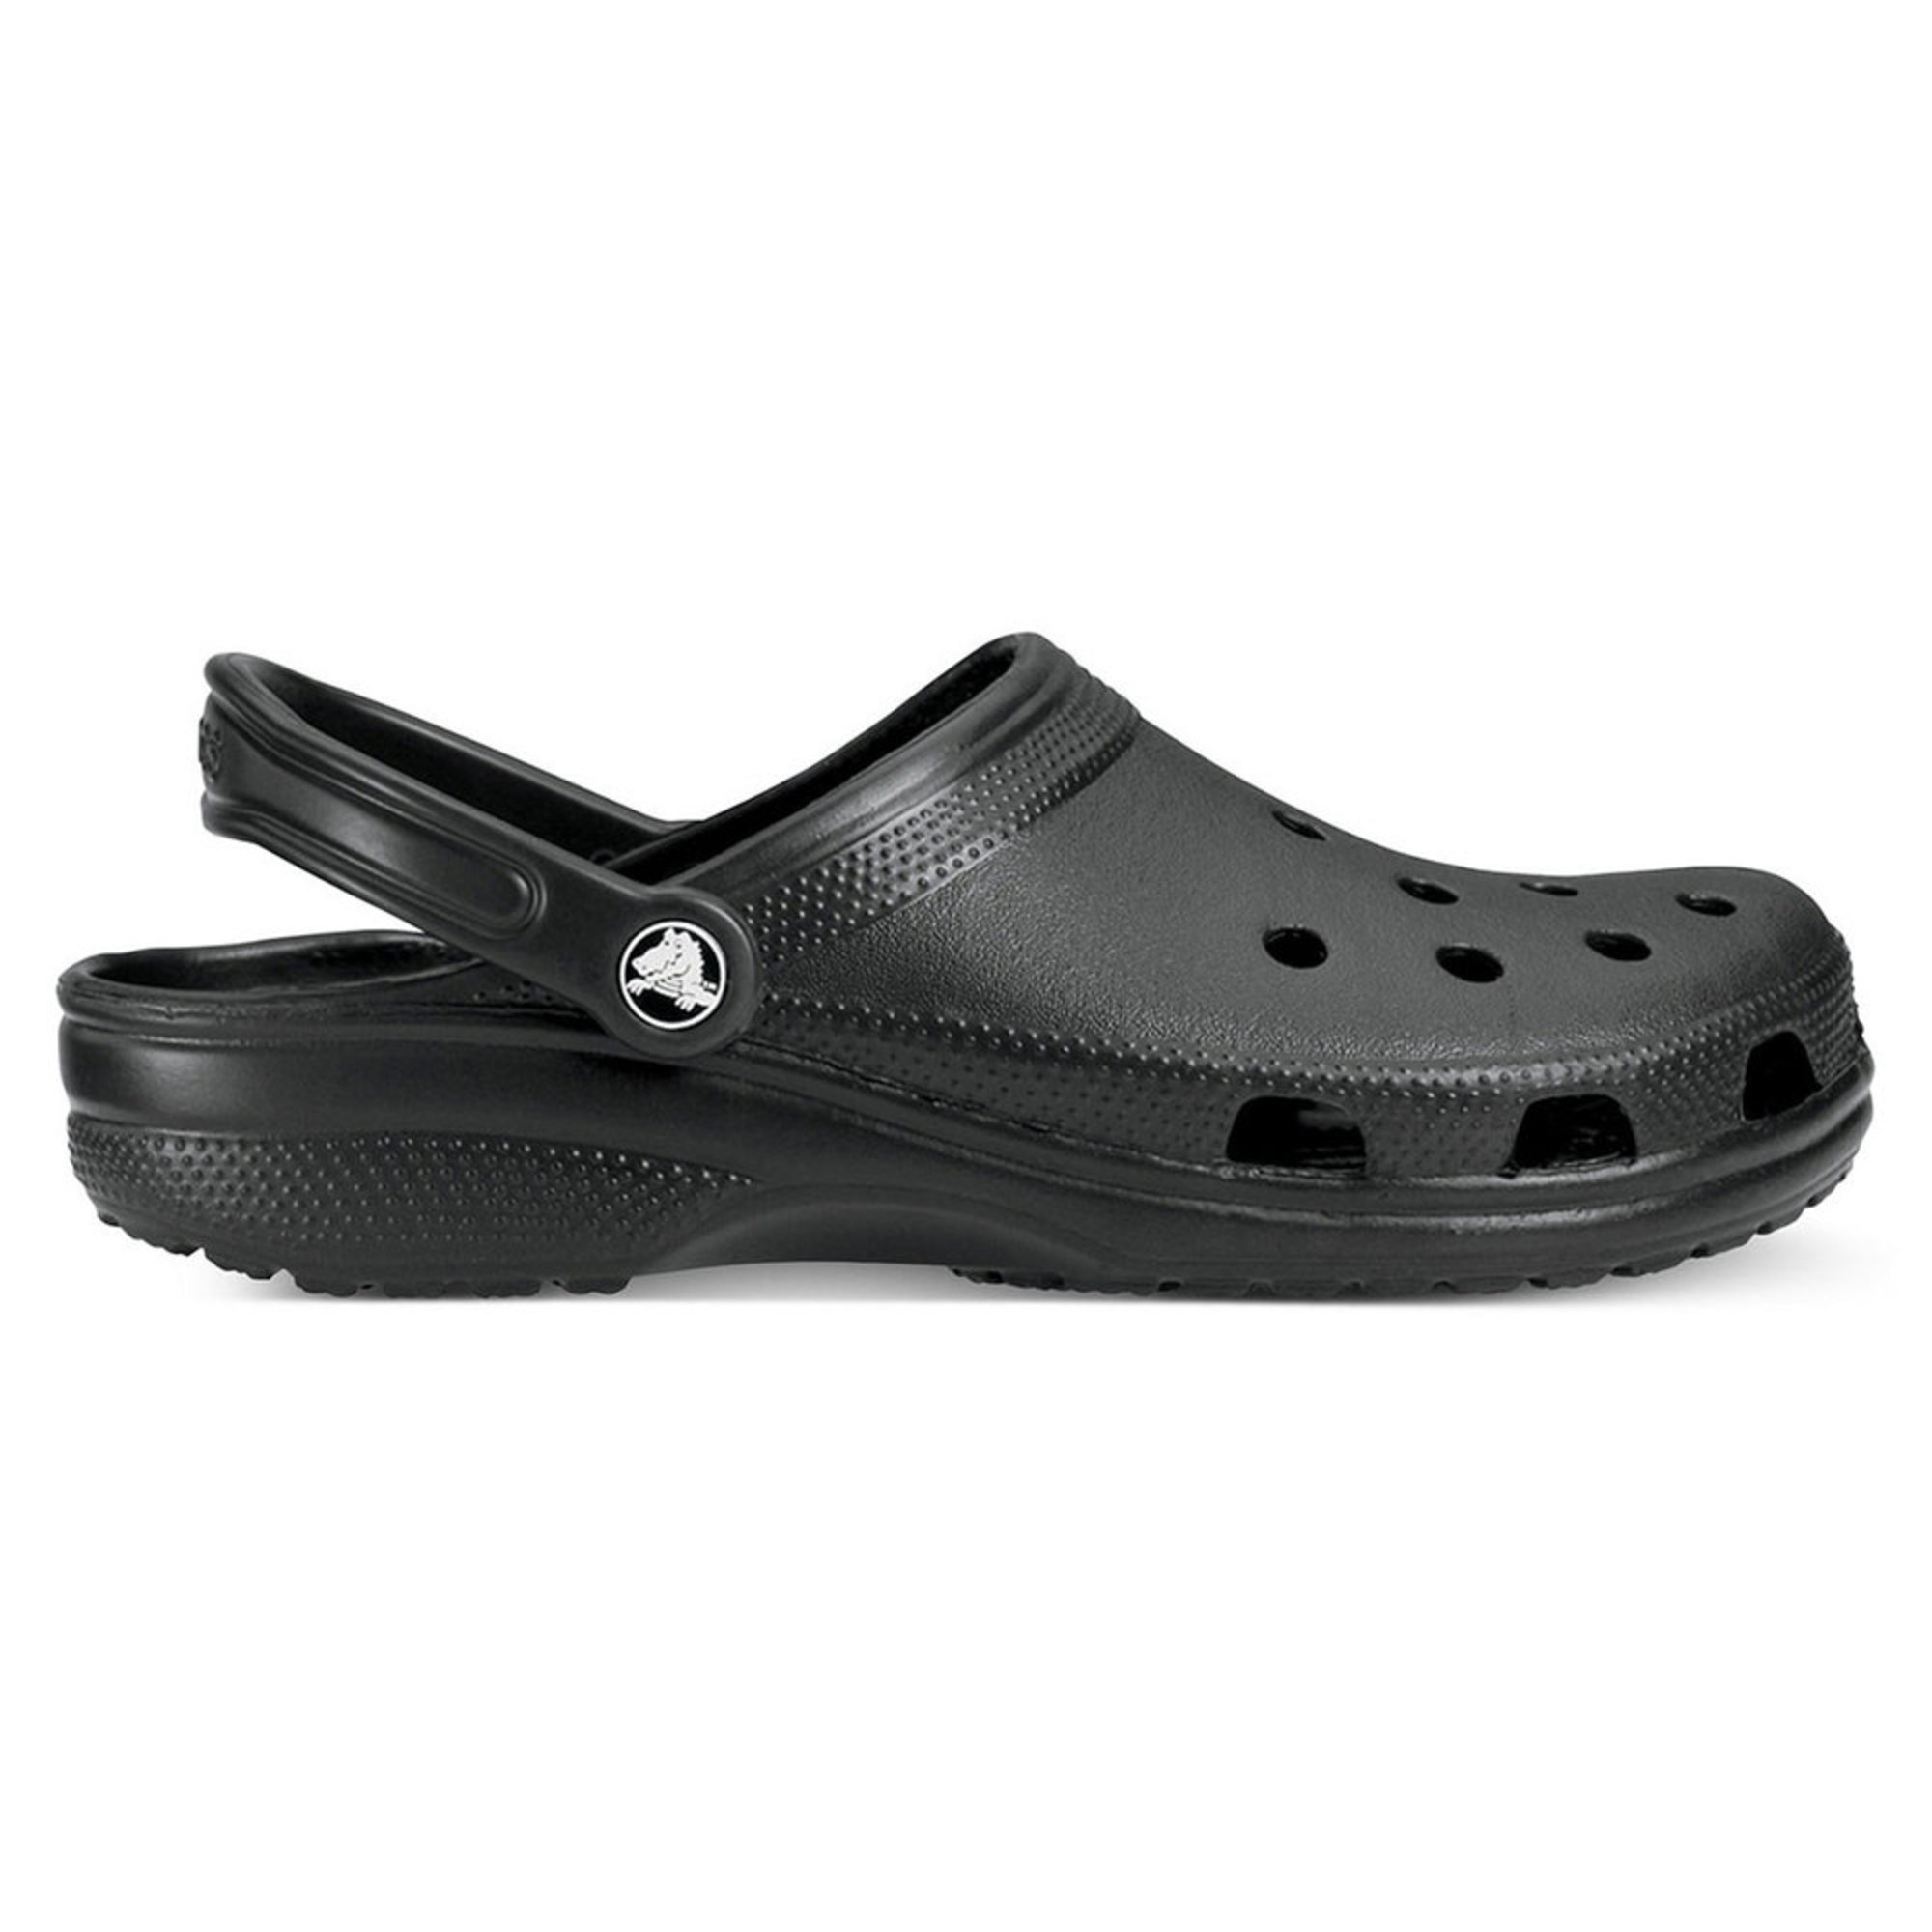 Crocs Men's Cayman Classic Clog | Men's Sandals | Shoes - Shop Your ...